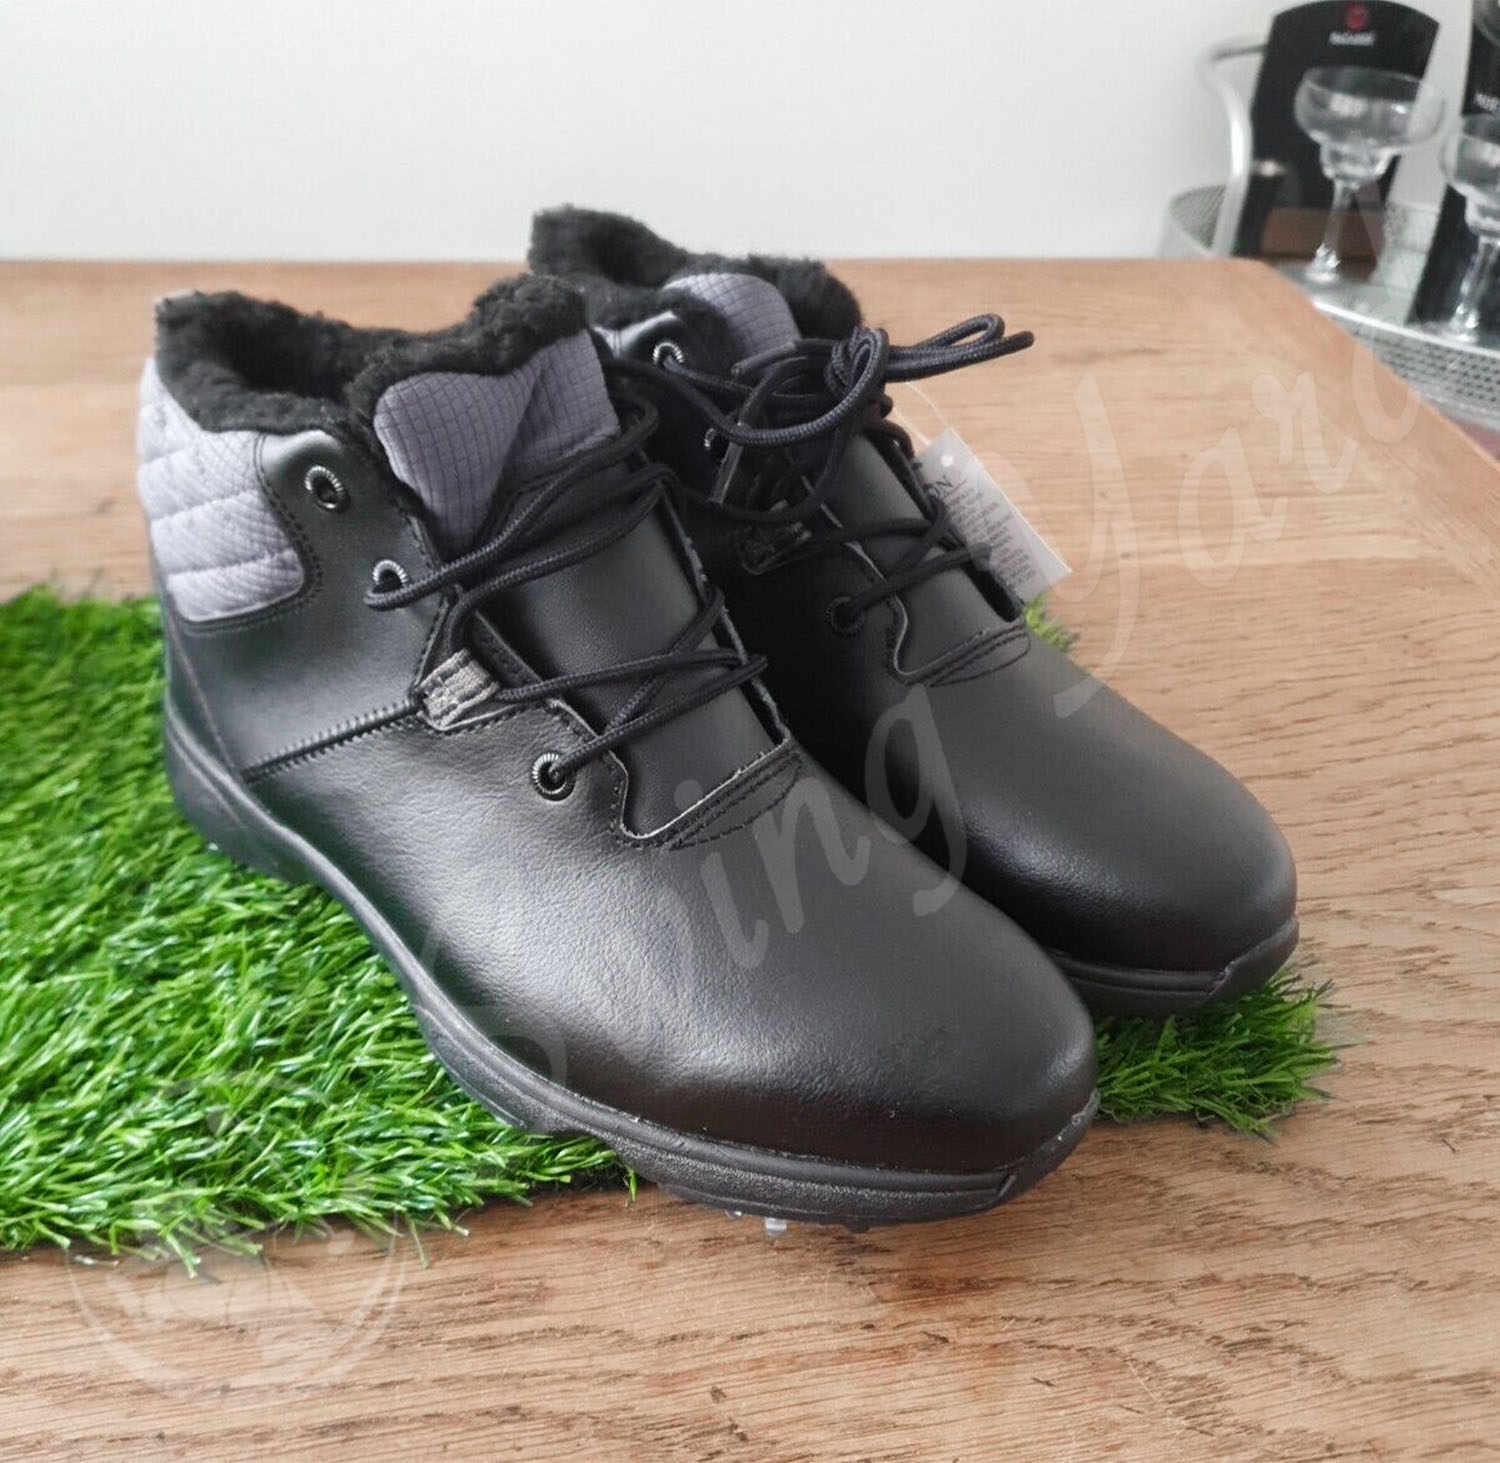 My new FootJoy women golf boots on the artificial grass mat